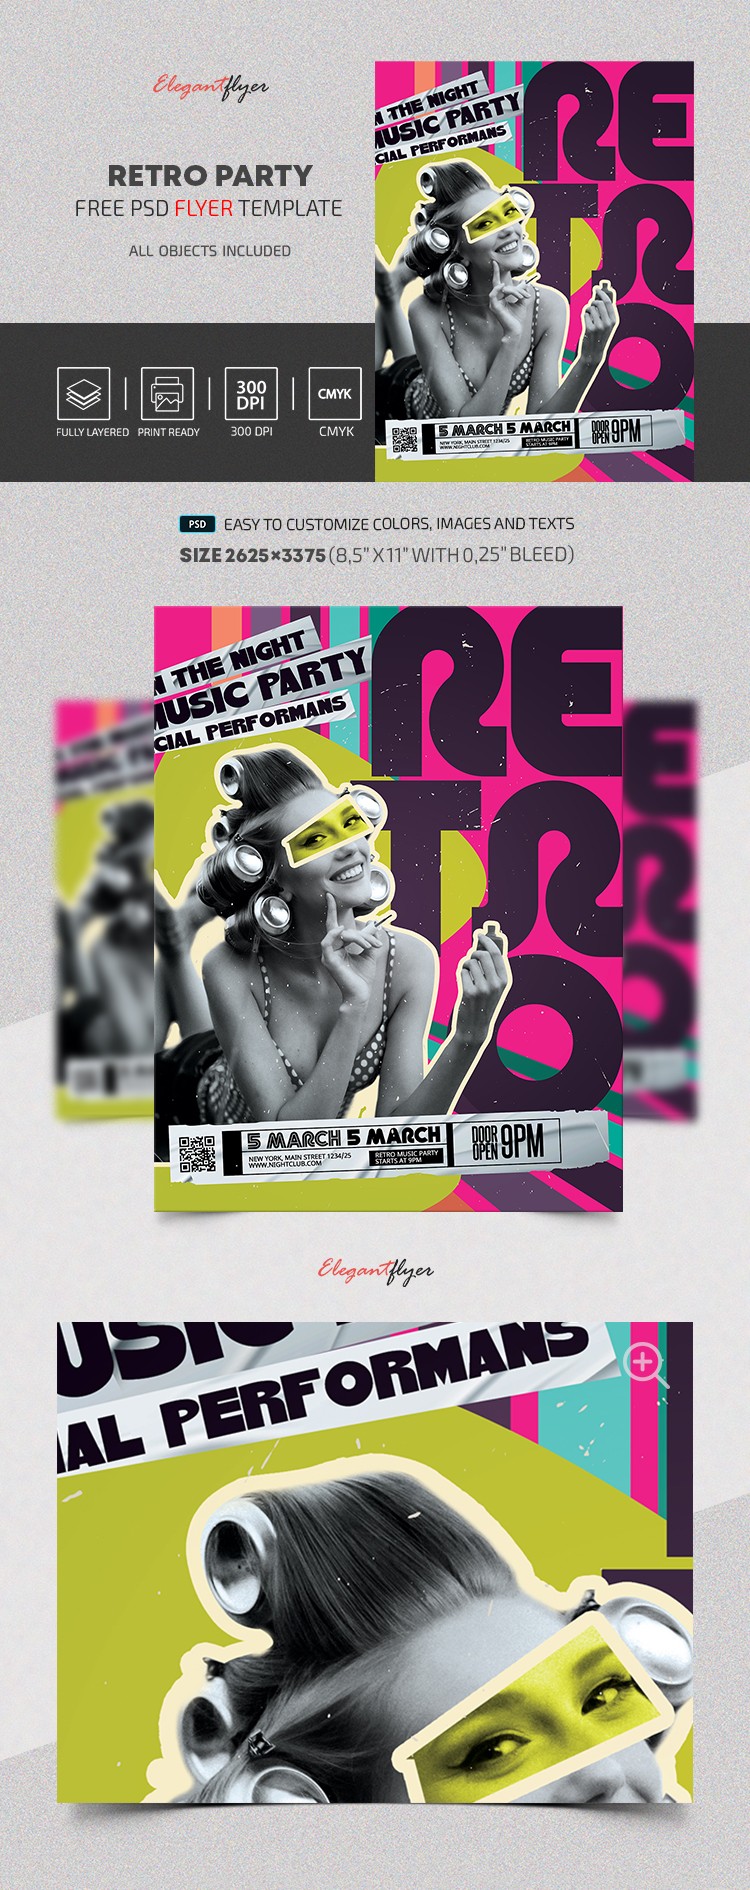 Retro Party Flyer by ElegantFlyer